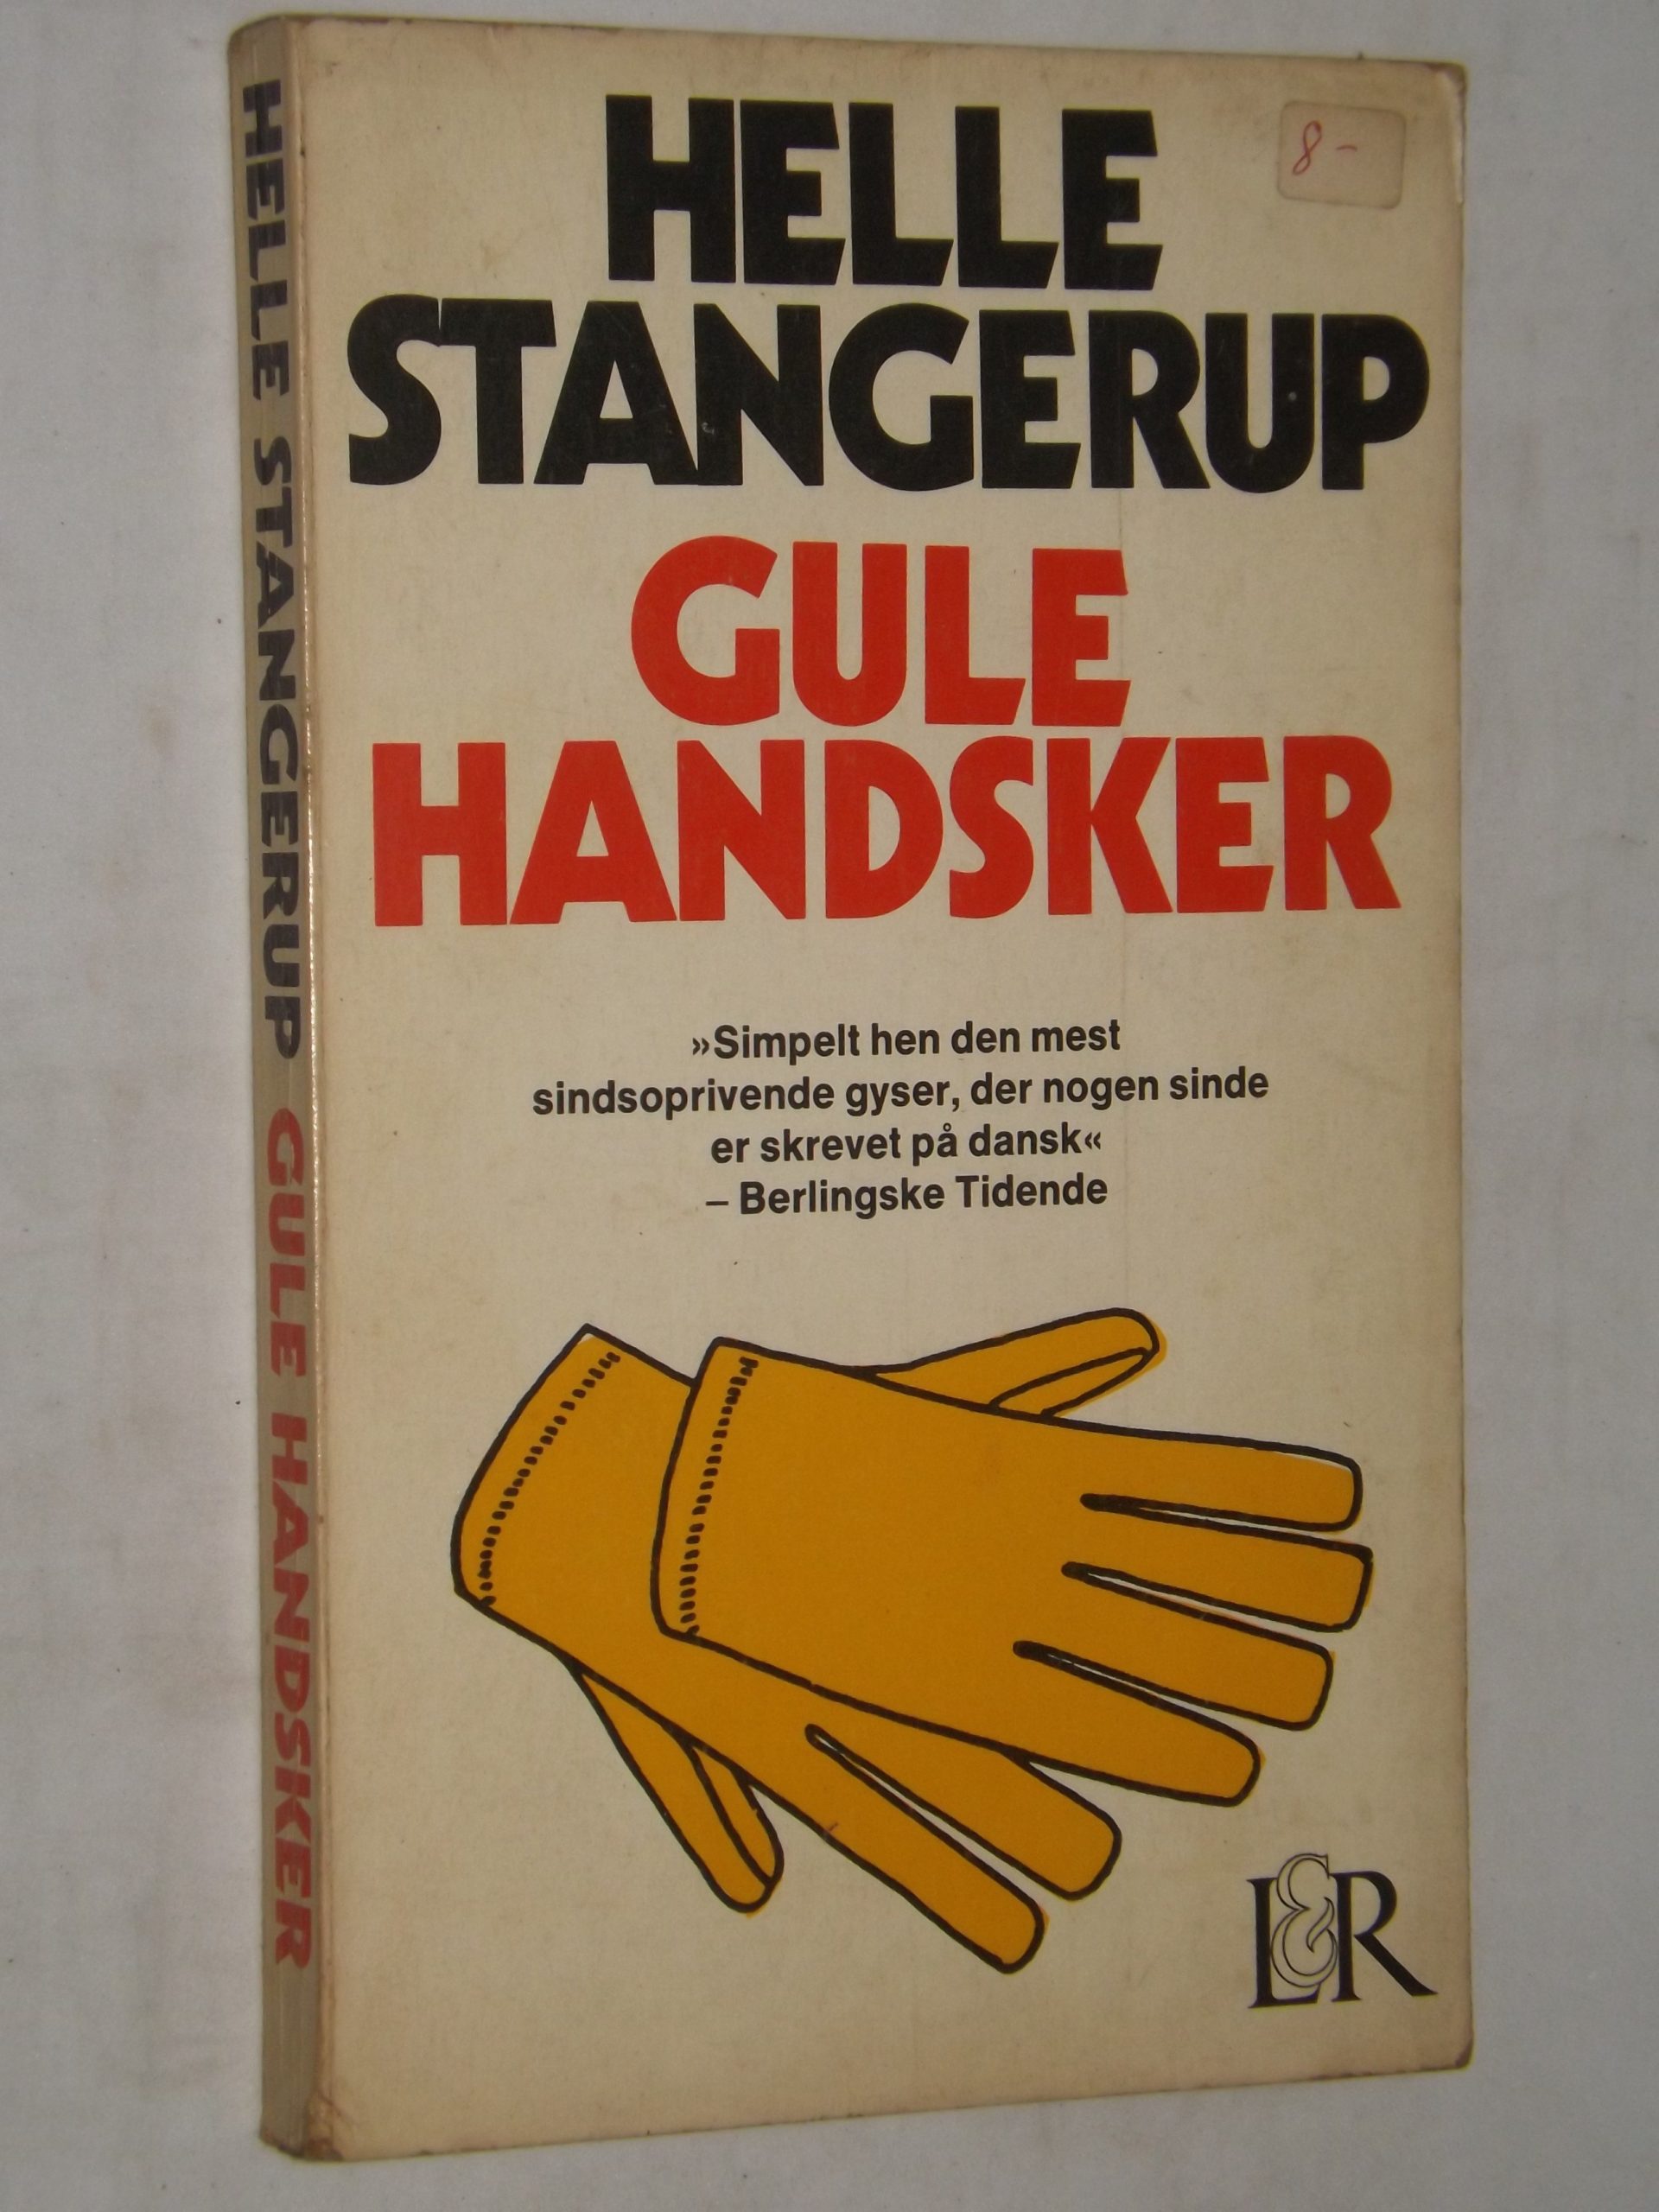 Klan Sada Helt tør Helle Stangerup: Gule handsker – Spejldans – bbog.dk – Brugte bøger til salg